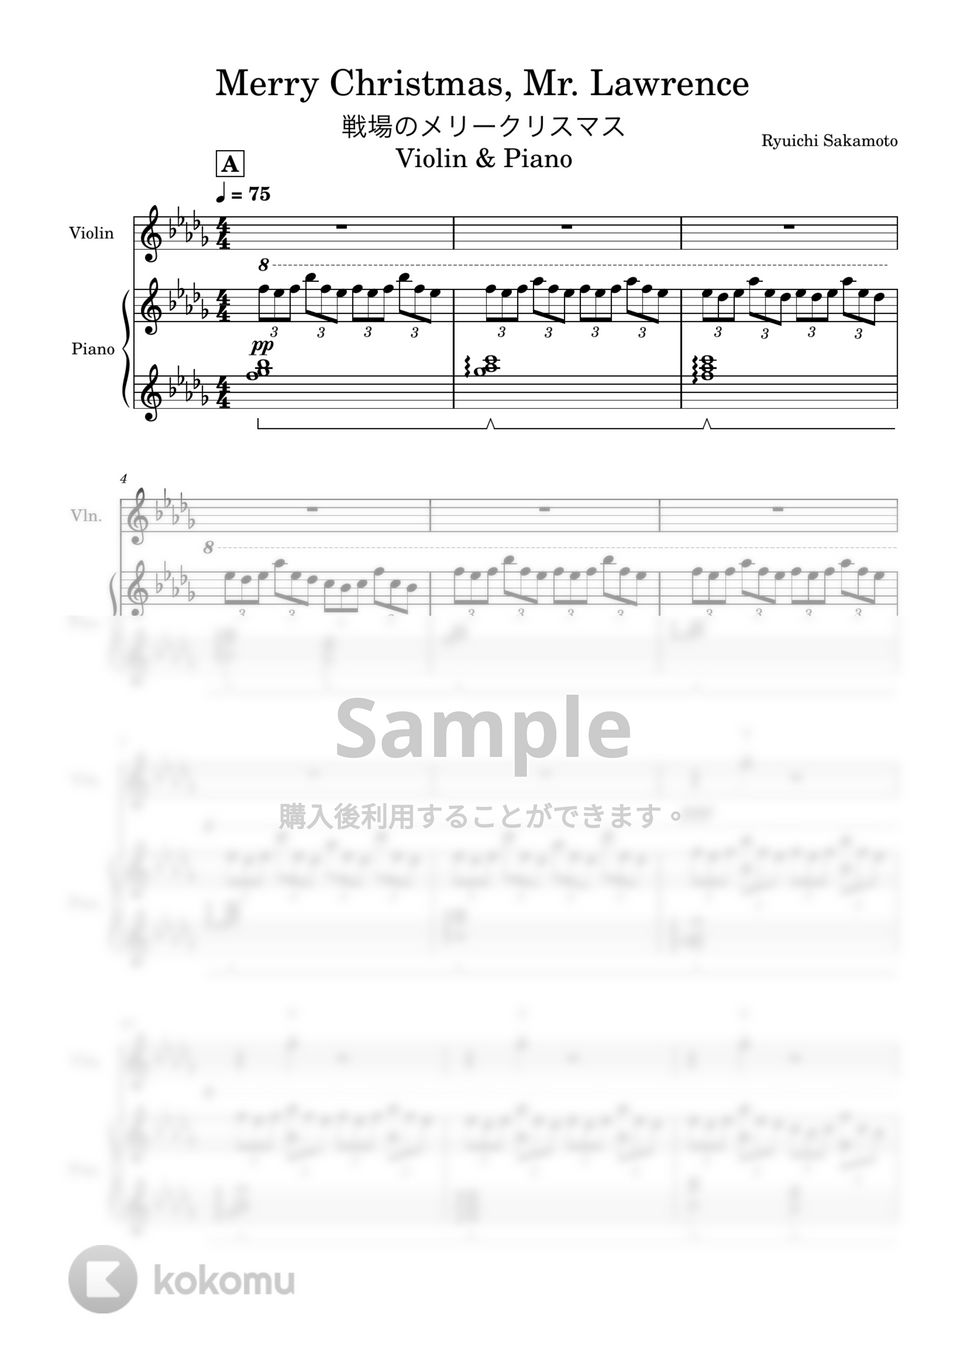 坂本龍一 - 戦場のメリークリスマス (バイオリン＆ピアノカバー) by Kaide